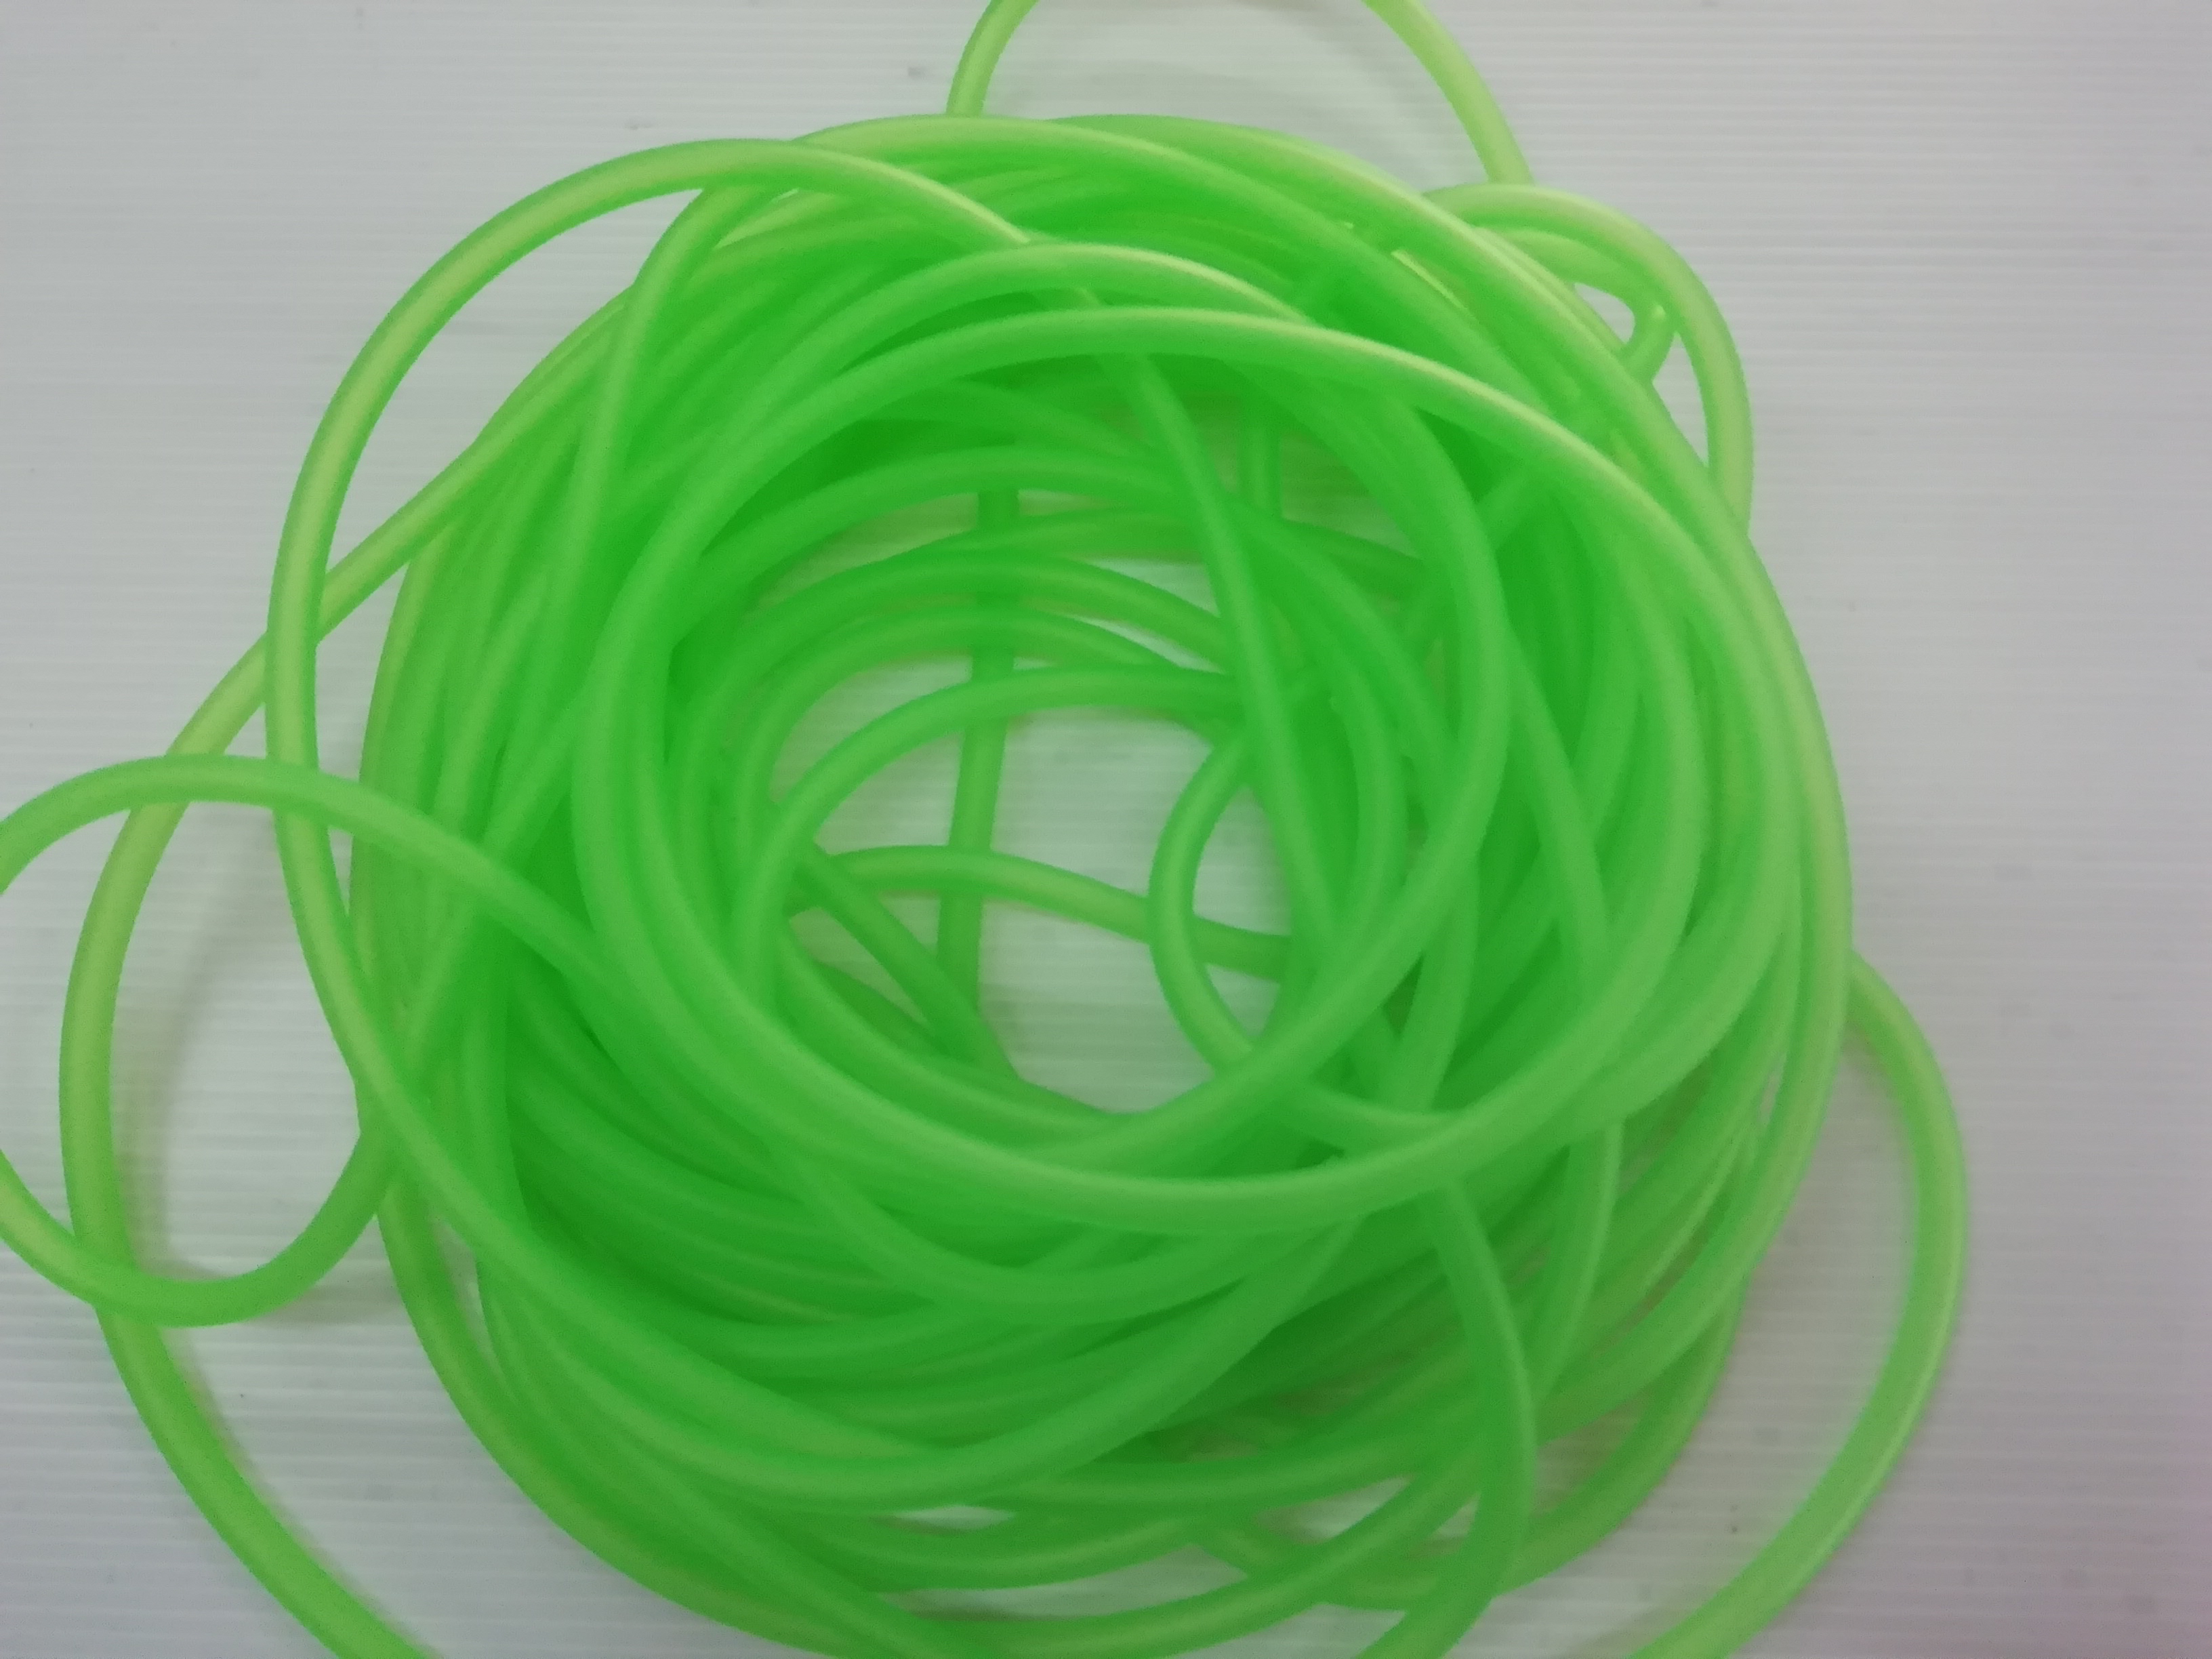 สีเขียวใส สายน้ำมันสี สายน้ำมัน แต่งมอเตอร์ไซด์ สีเขียวใส  ตัดแบ่งขายเป็นเมตร